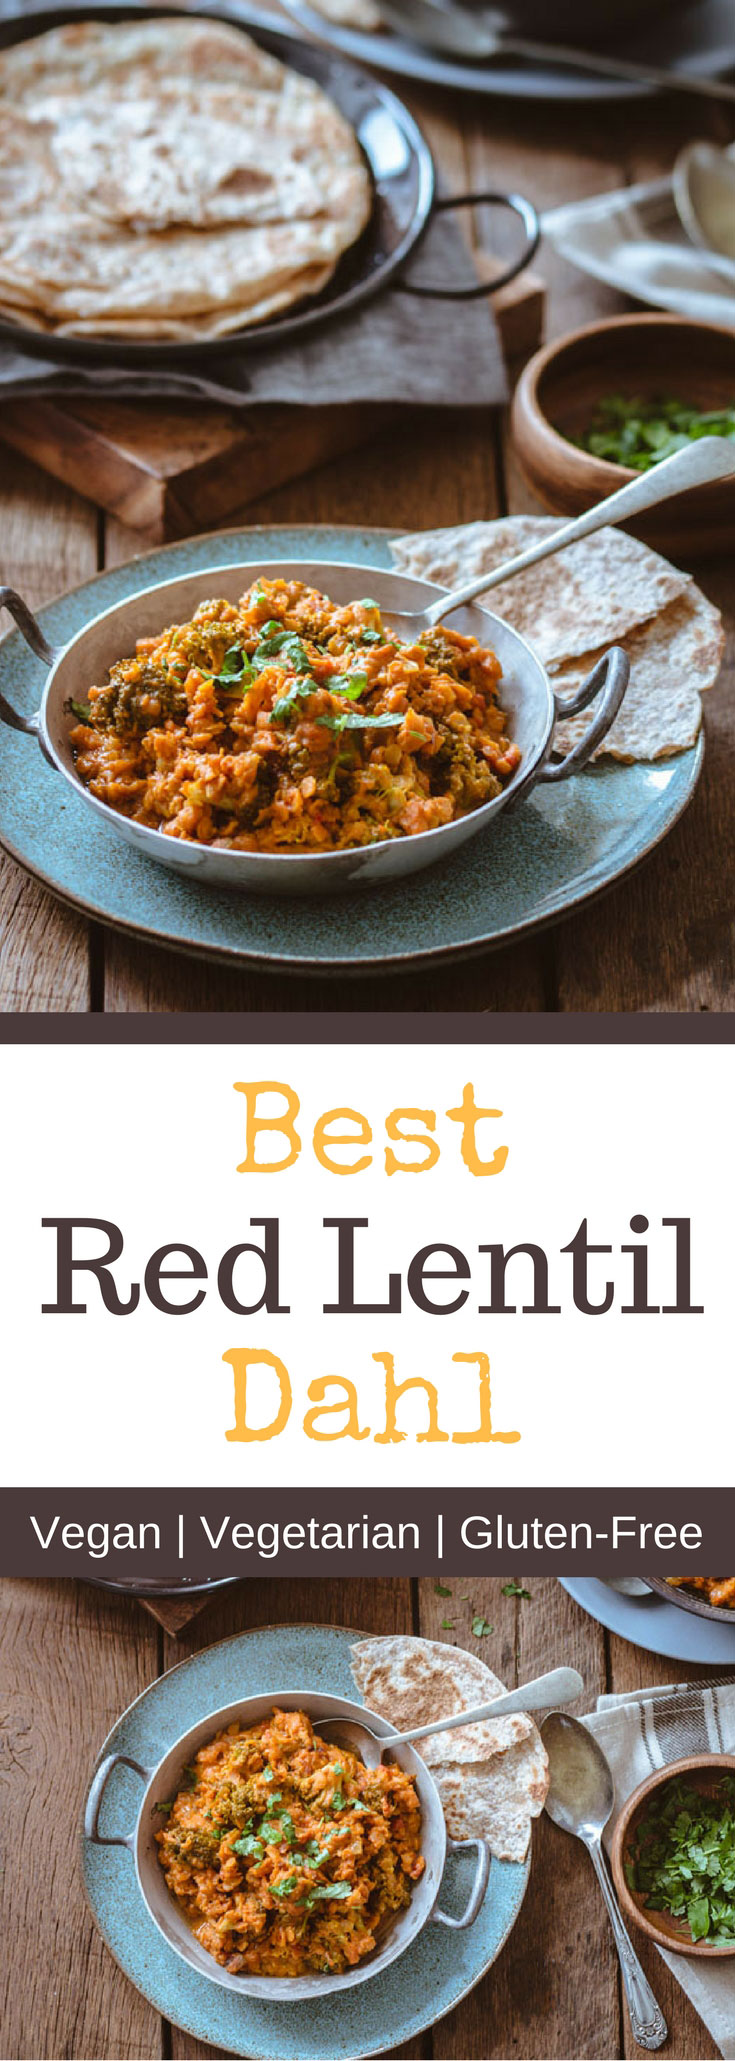 Best Red Lentil Dahl